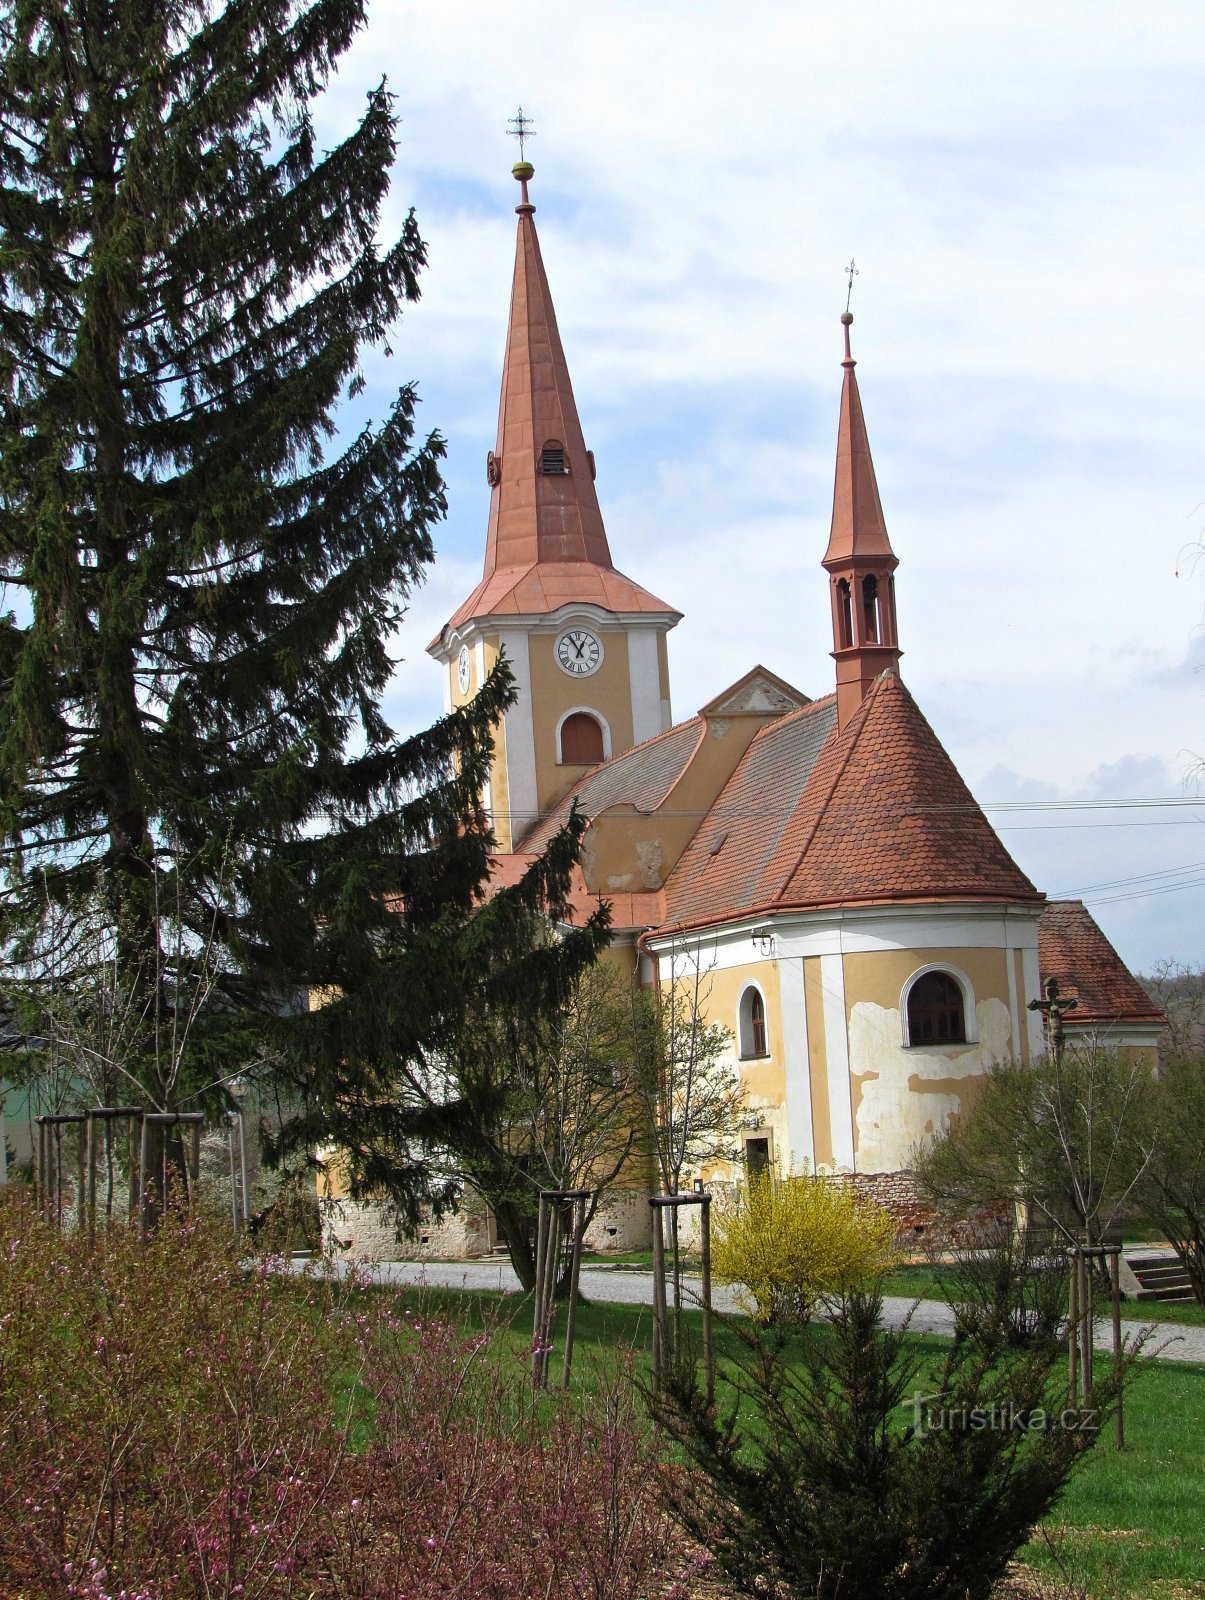 Pačlavice - Nhà thờ St. Martin